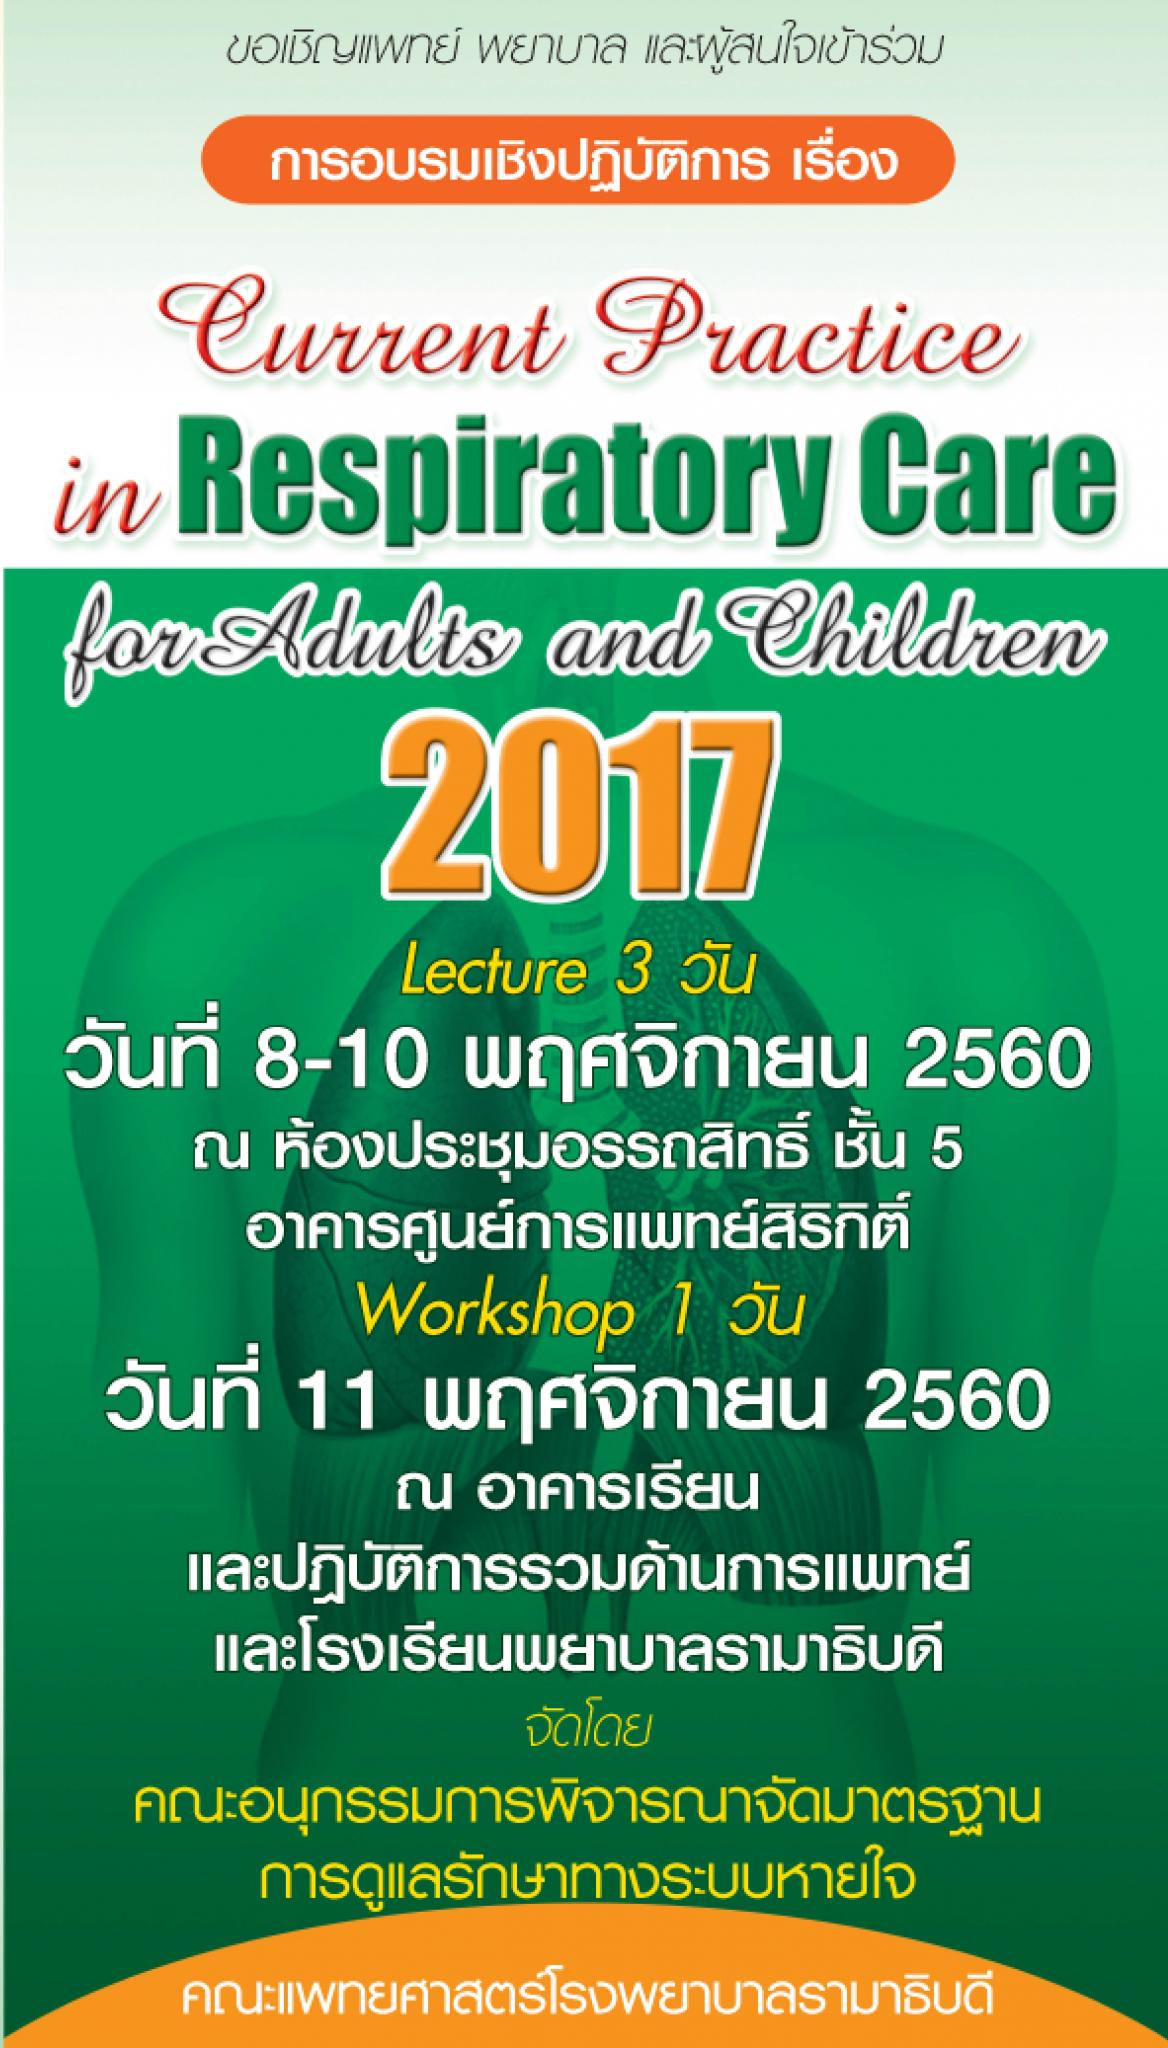 อบรมเชิงปฏิบัติการเรื่อง Current Practice in Respiratory Care for Adults and Children 2017